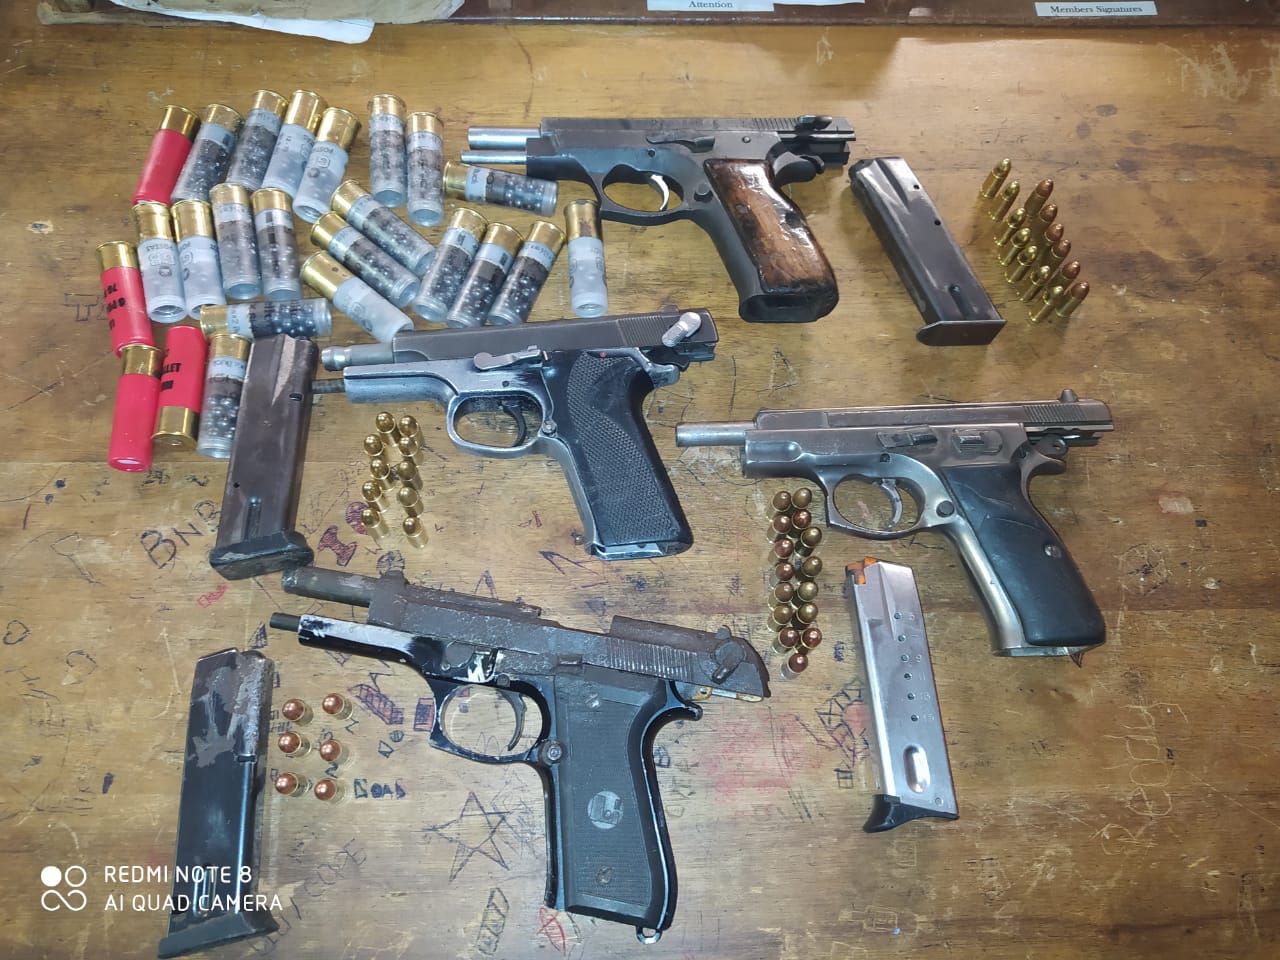 Four firearms seized in Dalton, three men due in court